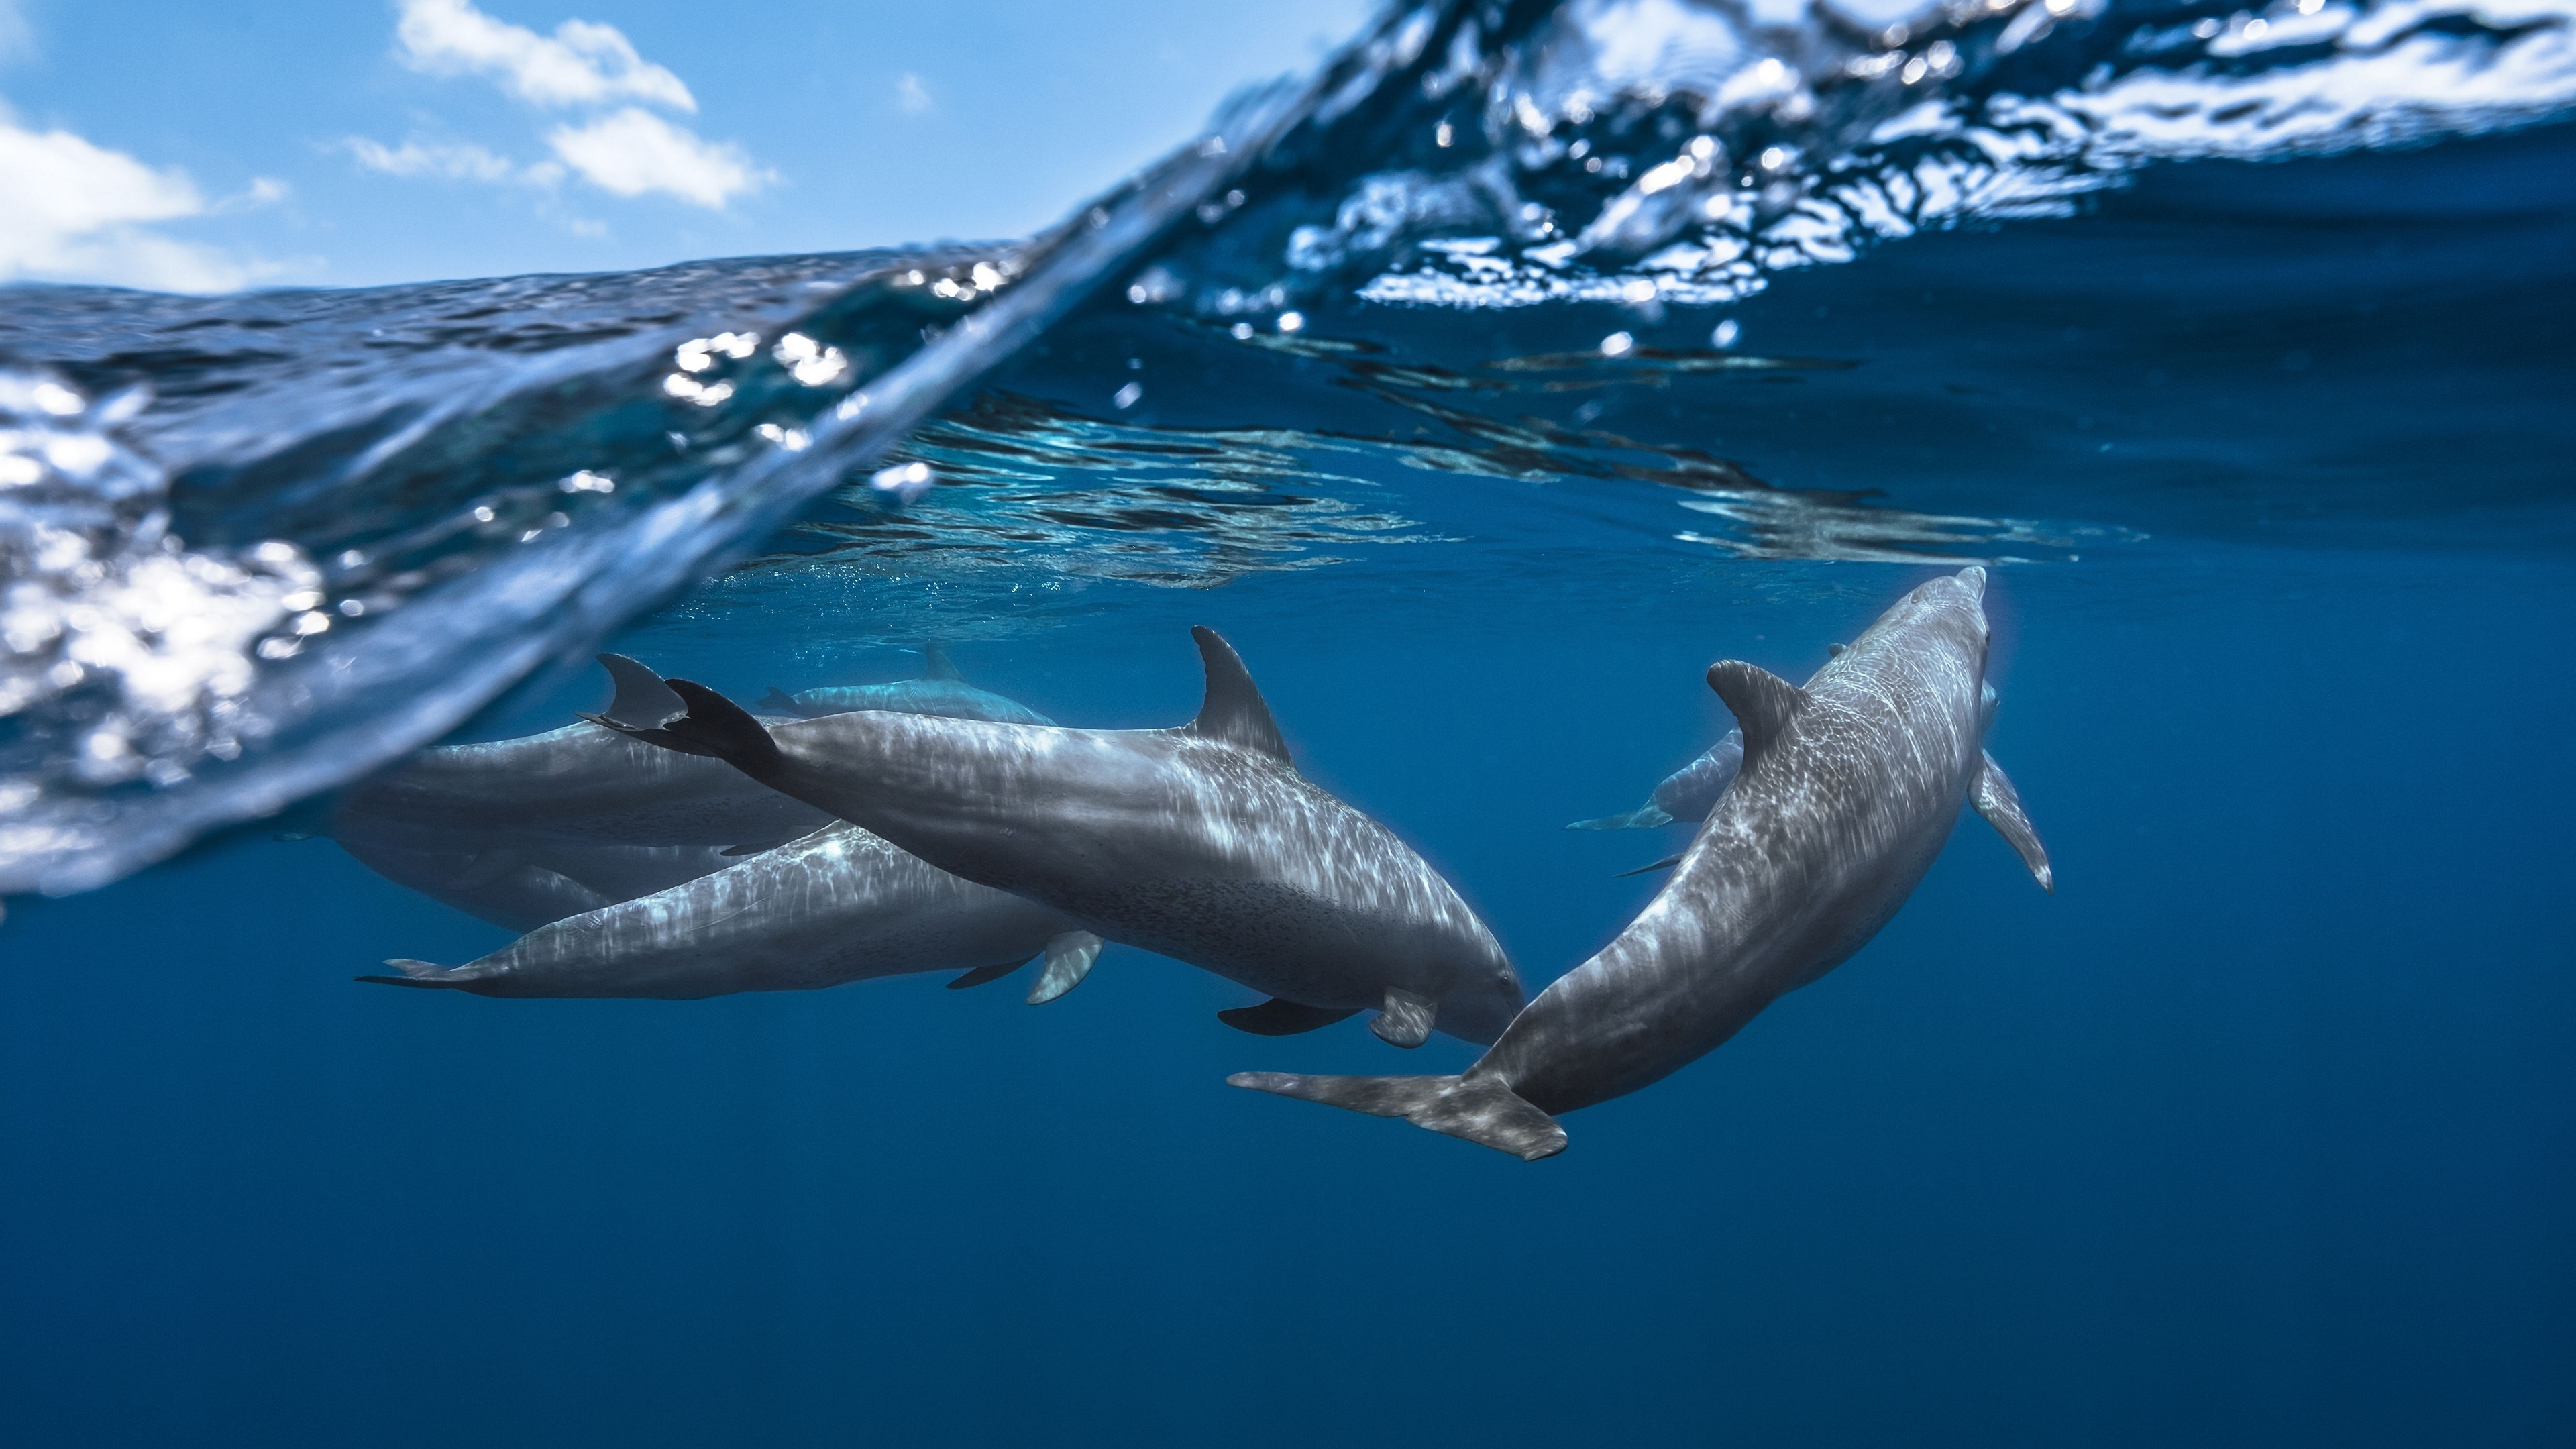 Wallpapers dolphins underwater ocean on the desktop